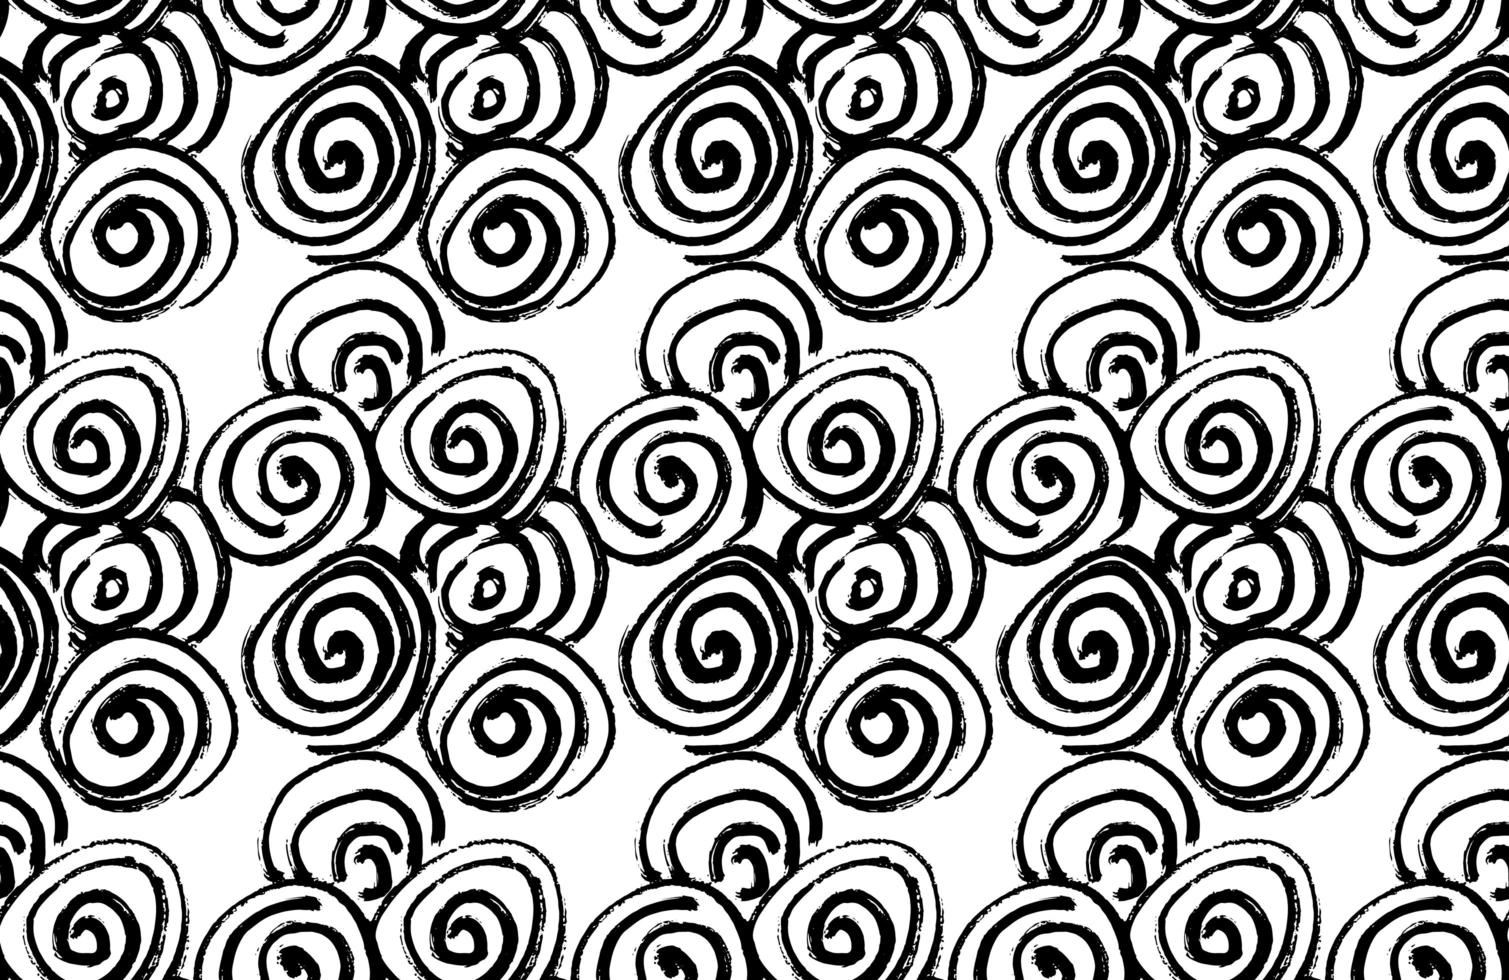 Dibujado a mano cepillo negro espiral abstracto de patrones sin fisuras, ilustración vectorial vector